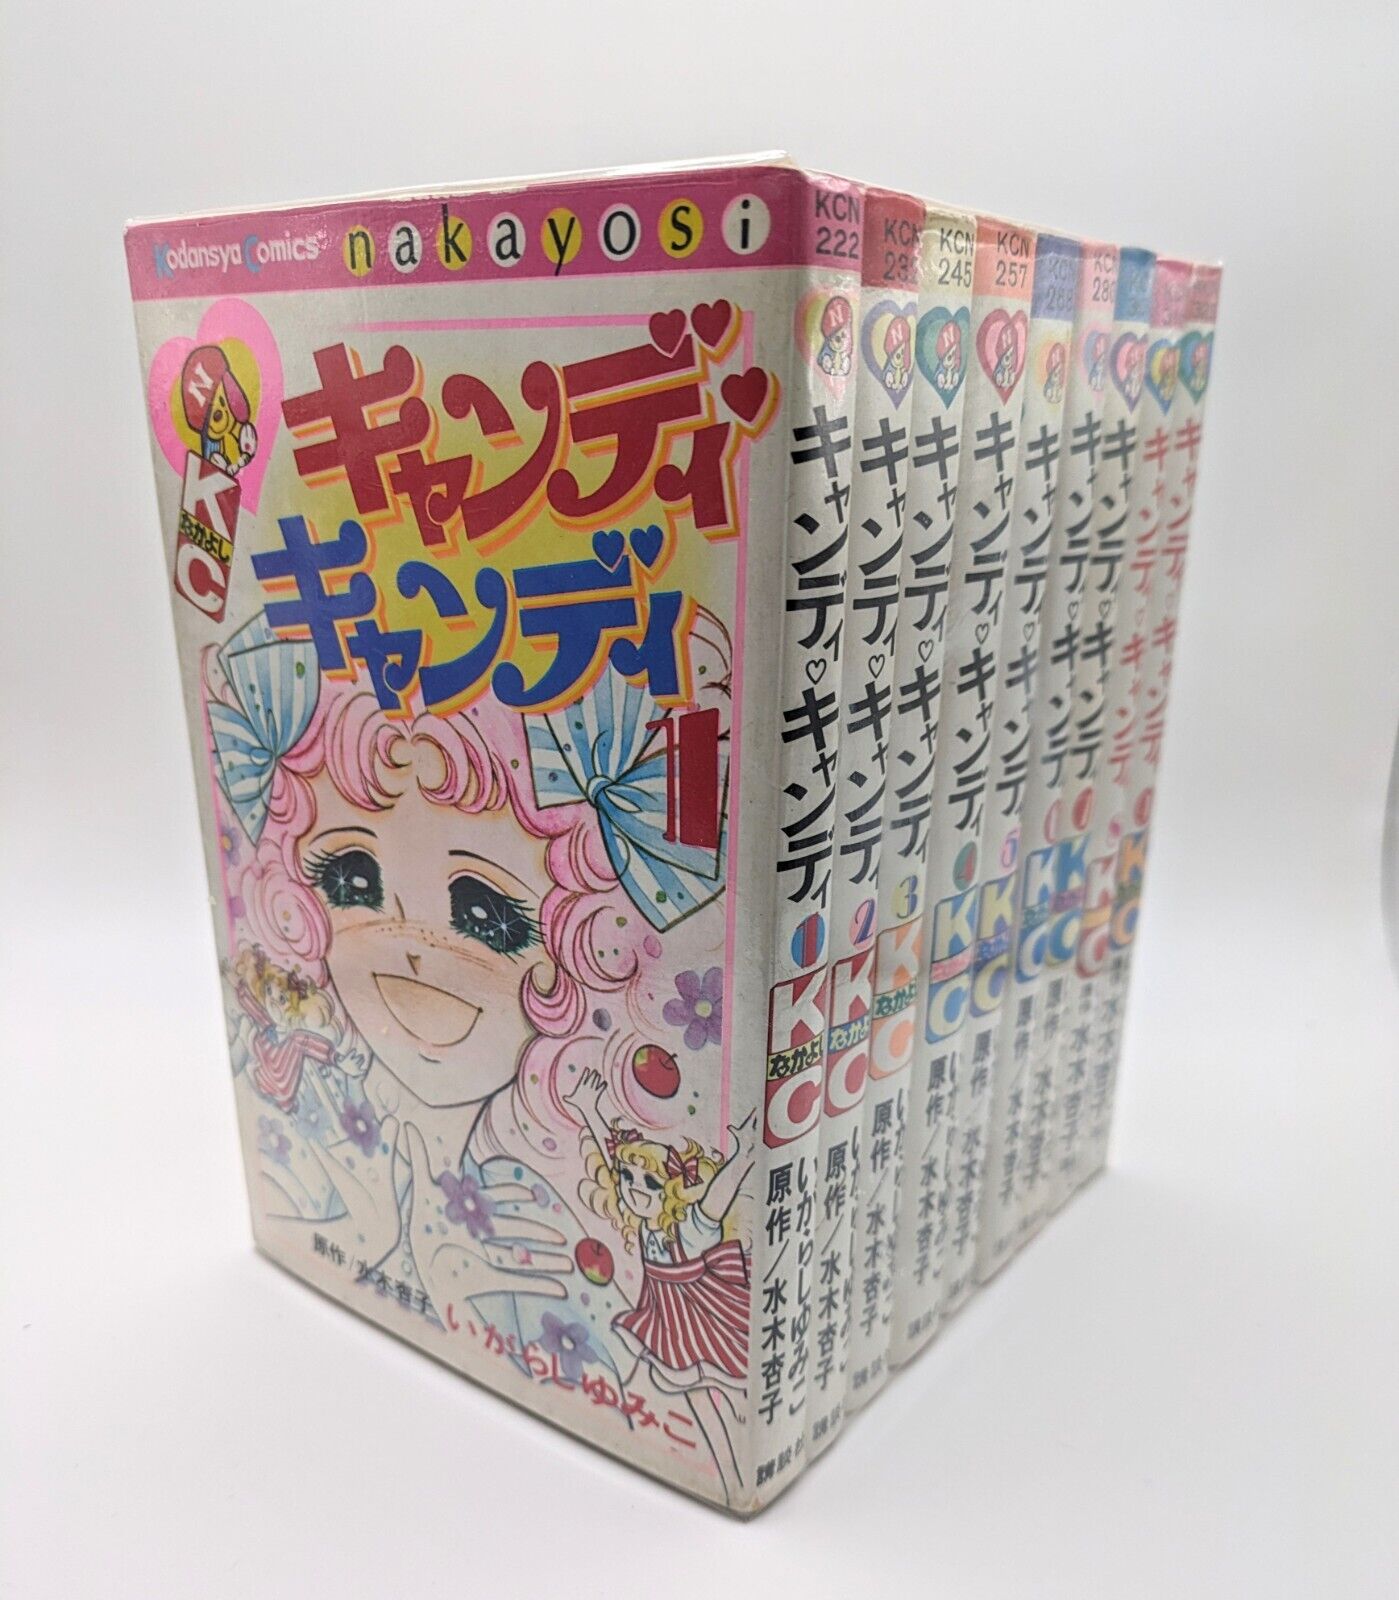 CANDY CANDY Manga Complete Set Igarashi Yumiko Comics Japanese 70's